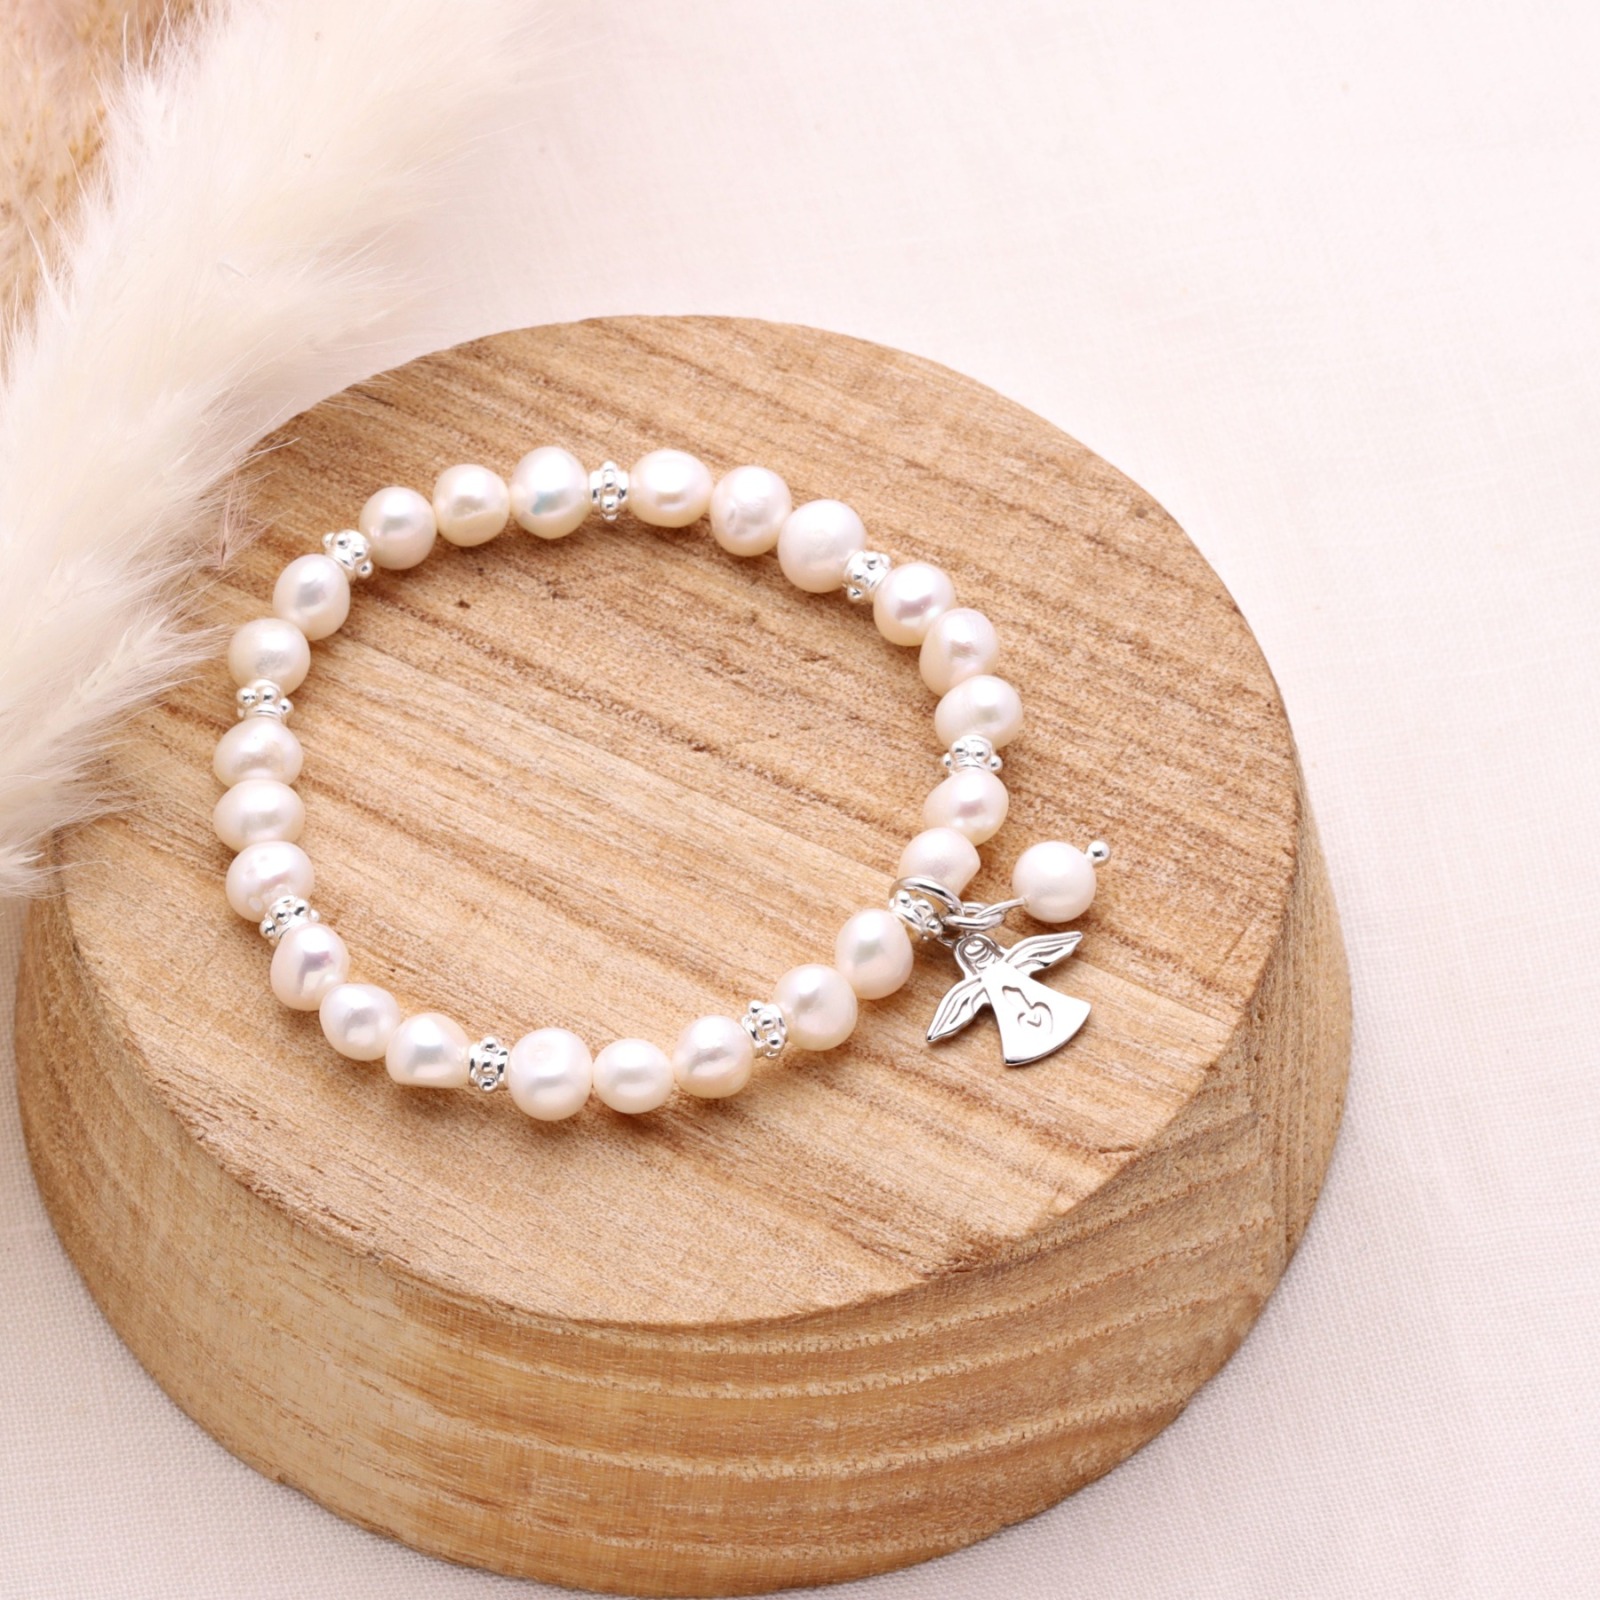 Armband aus echten Perlen mit Schutzengel Silber Geschenk zur Kommunion elastisch 4